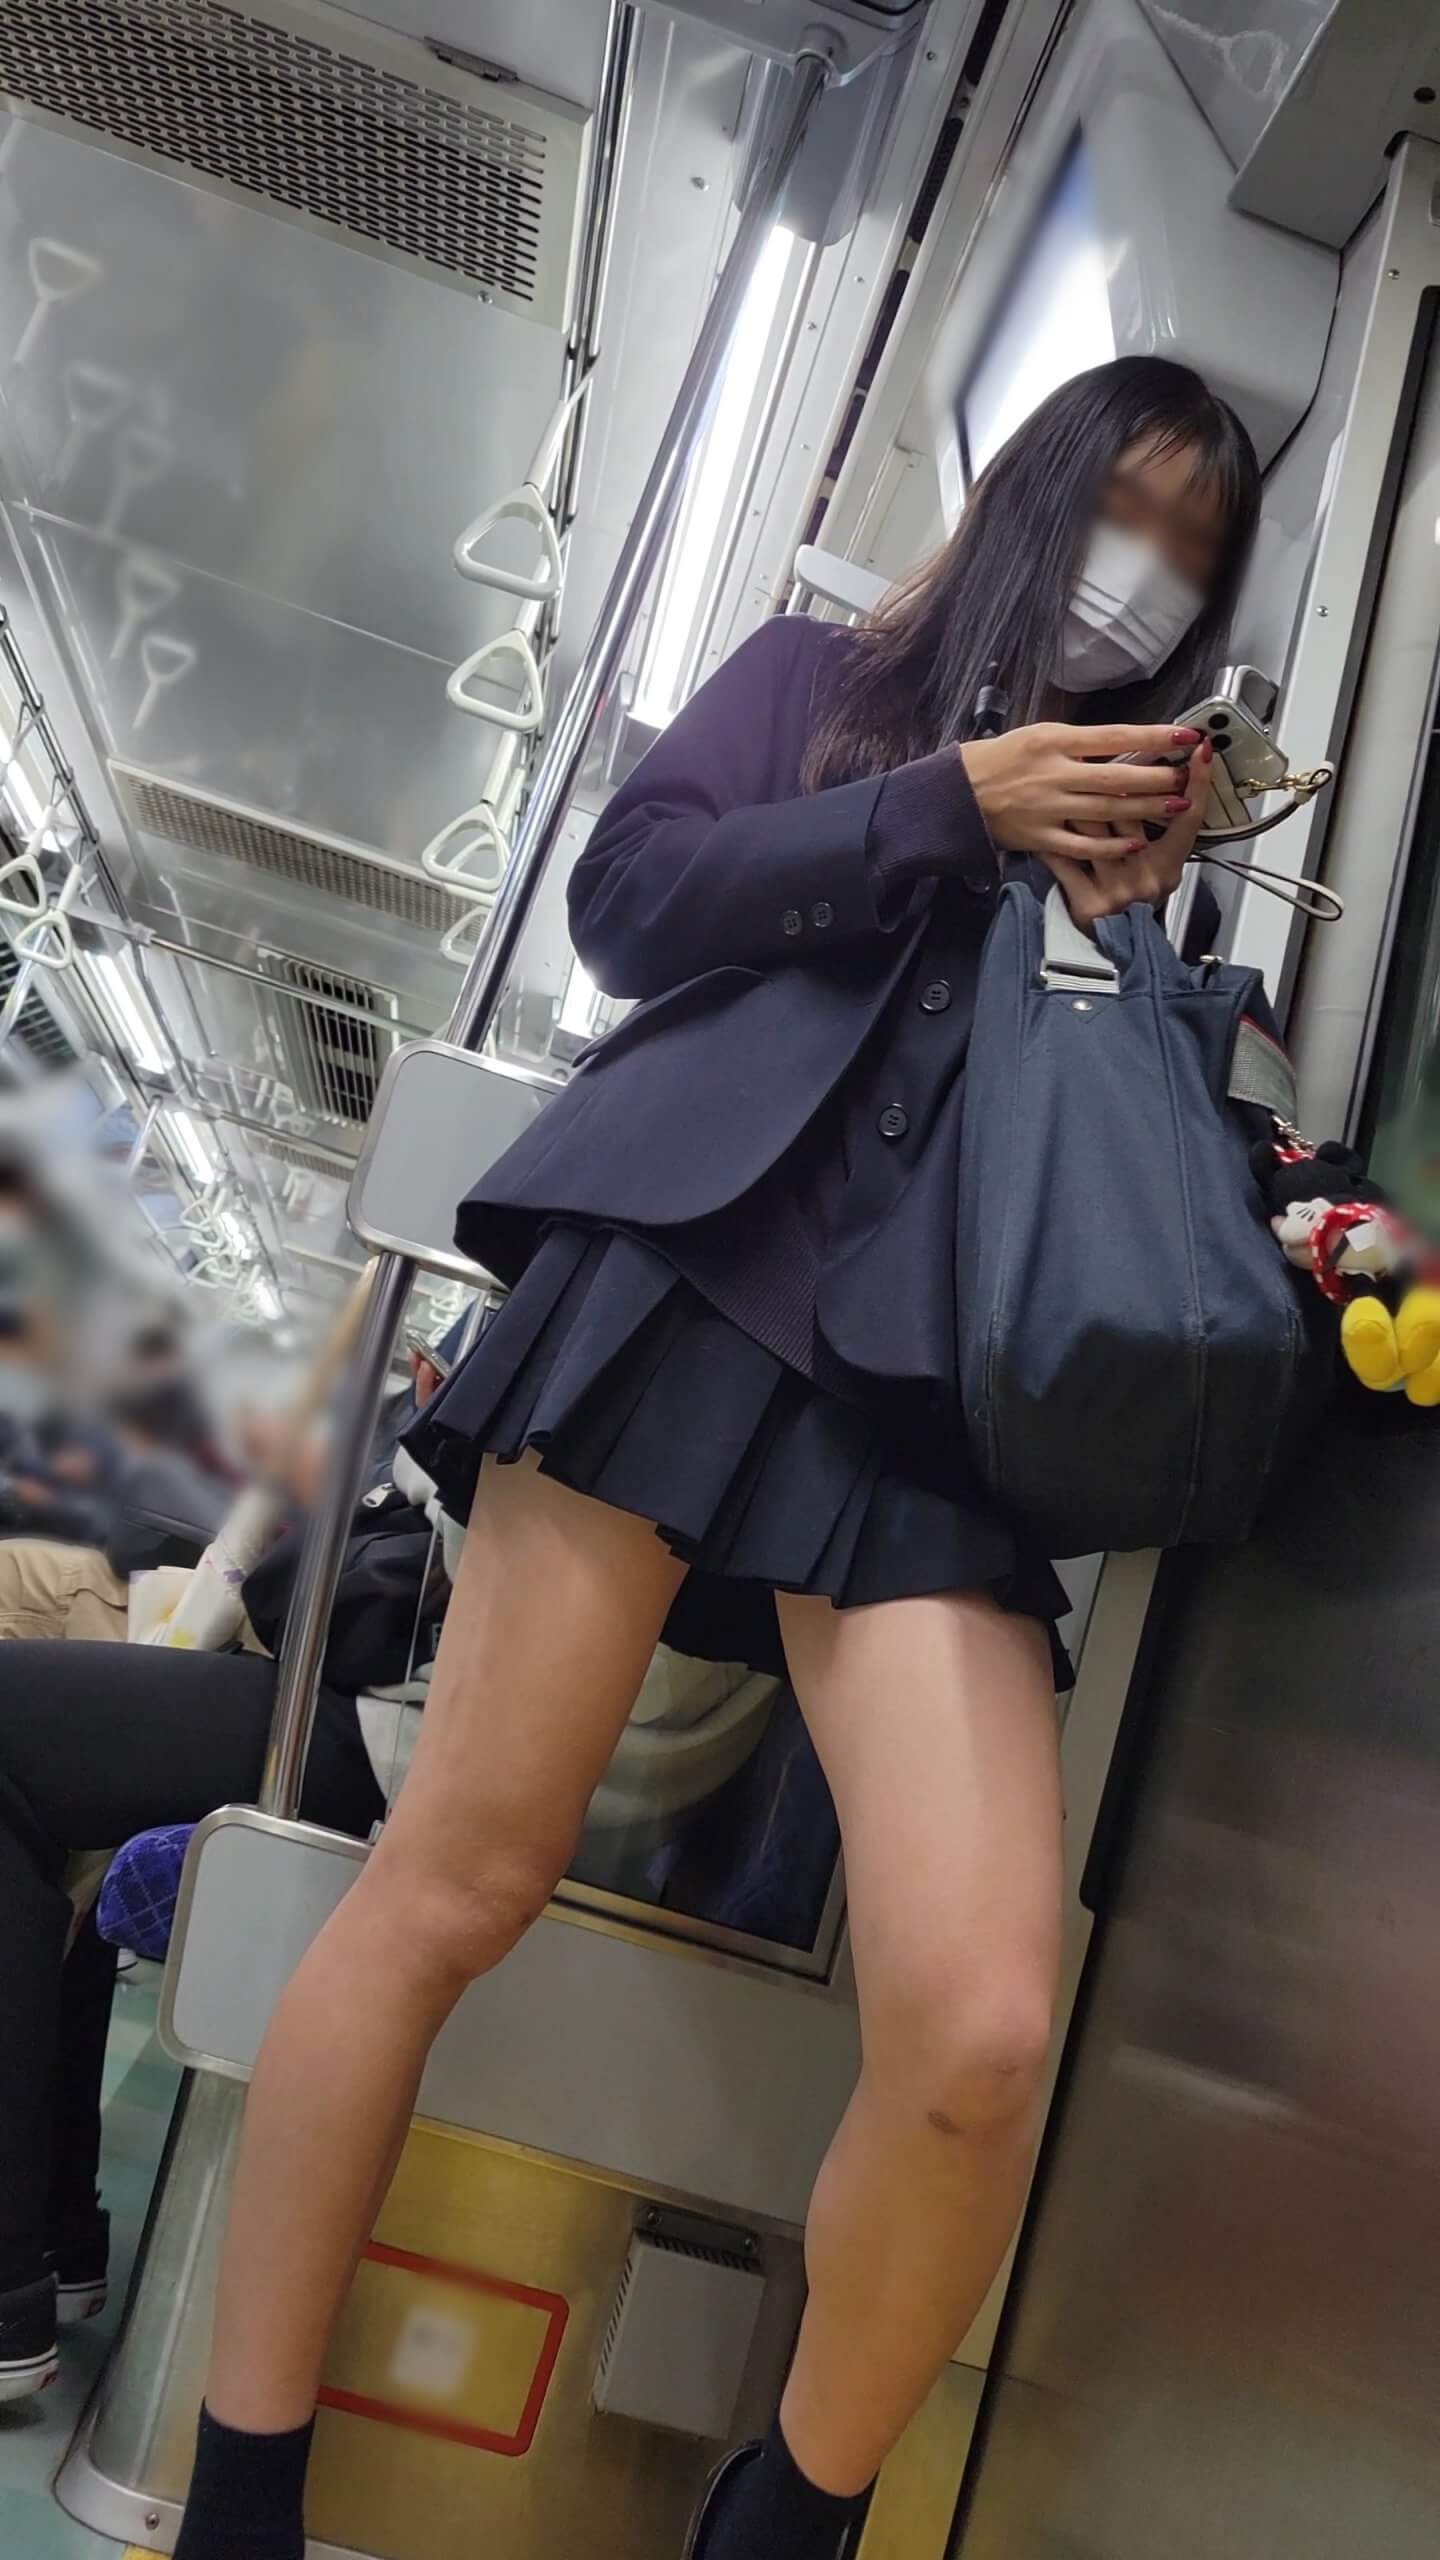 【画像】電車内に女子高生が居たら横目でチラチラ見てしまうよなｗｗ